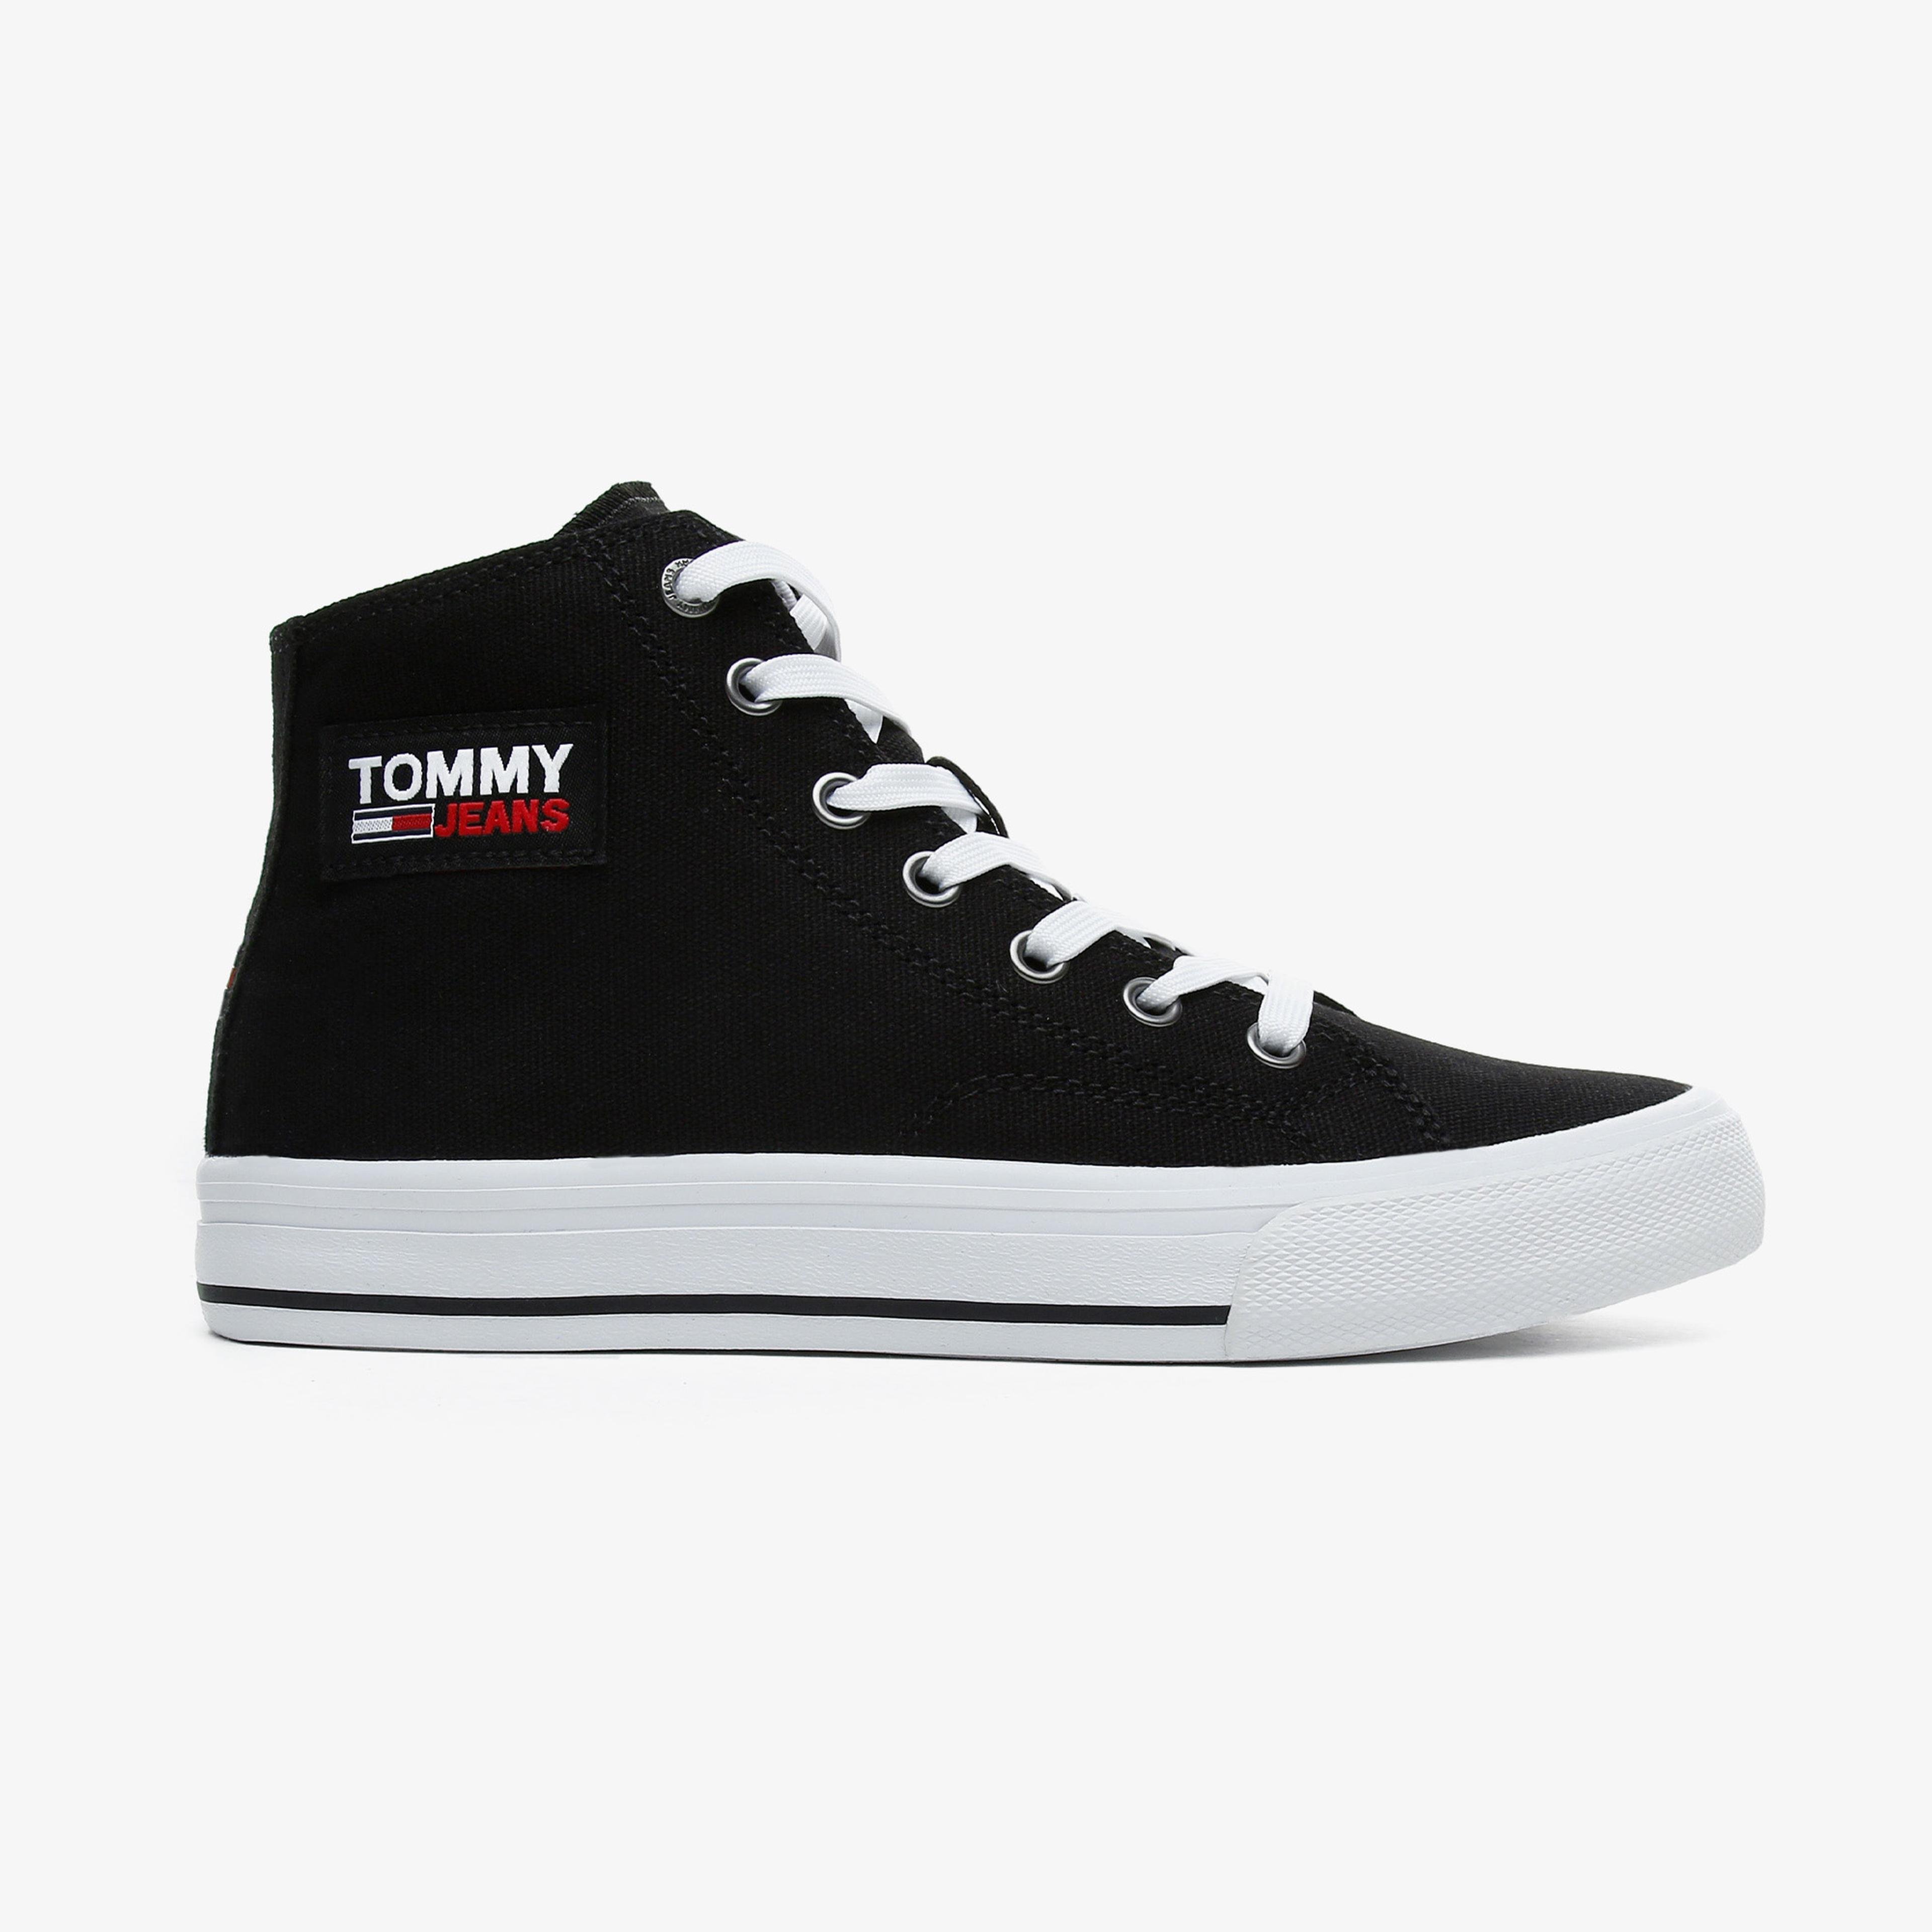 Tommy Hilfiger Tommy Jeans Midcut Vulc Kadın Siyah Spor Ayakkabı